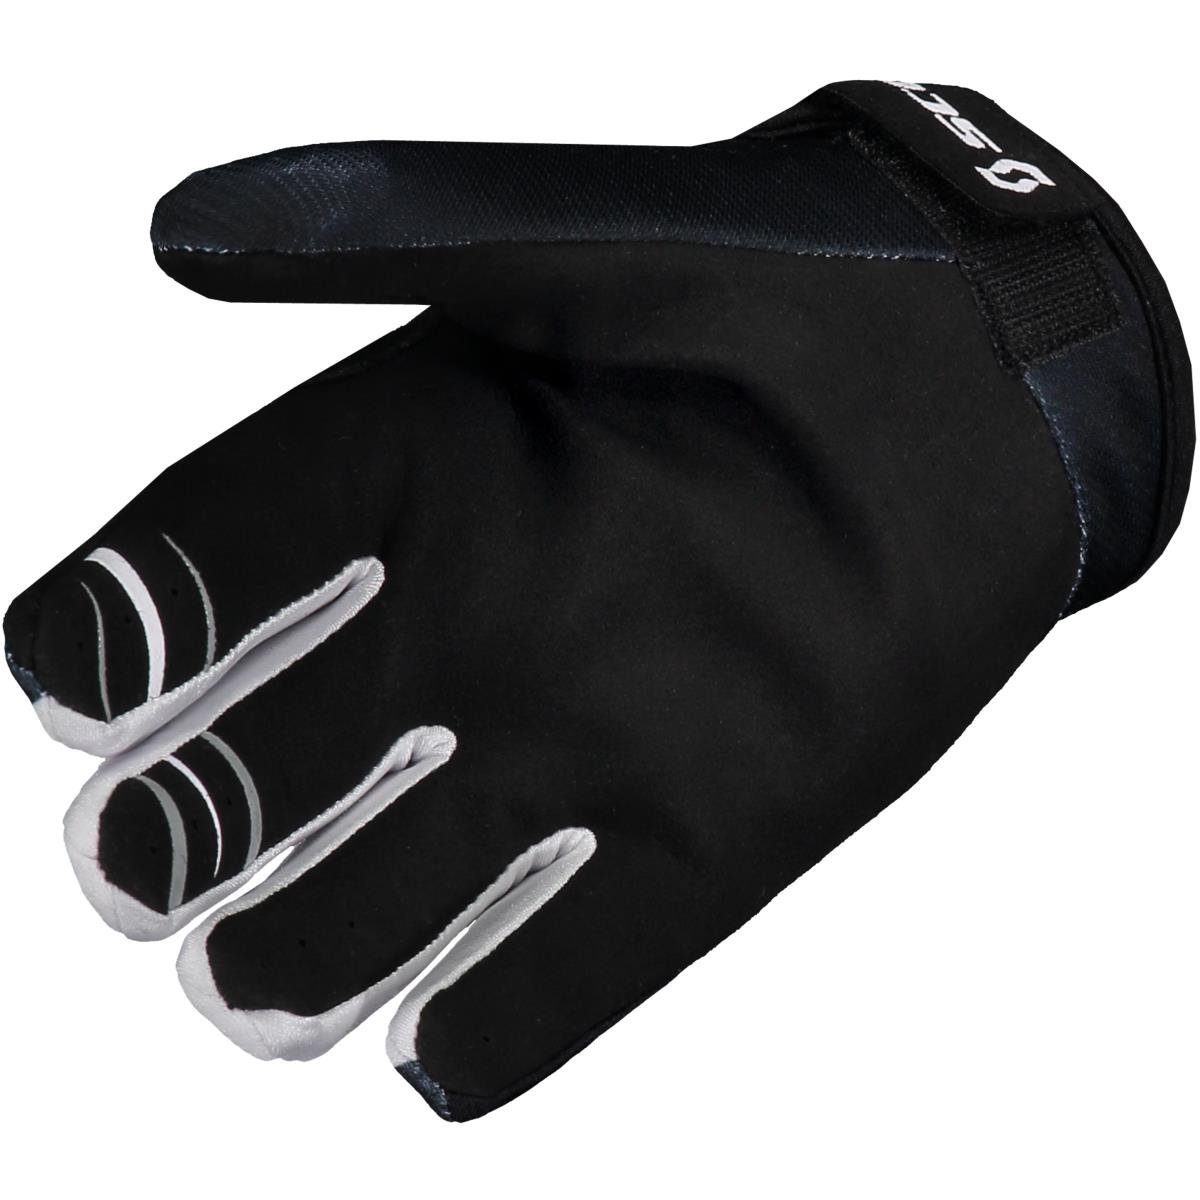 Handschuh Scott Scott Motorradhandschuhe 350 Dirt schwarz / weiß